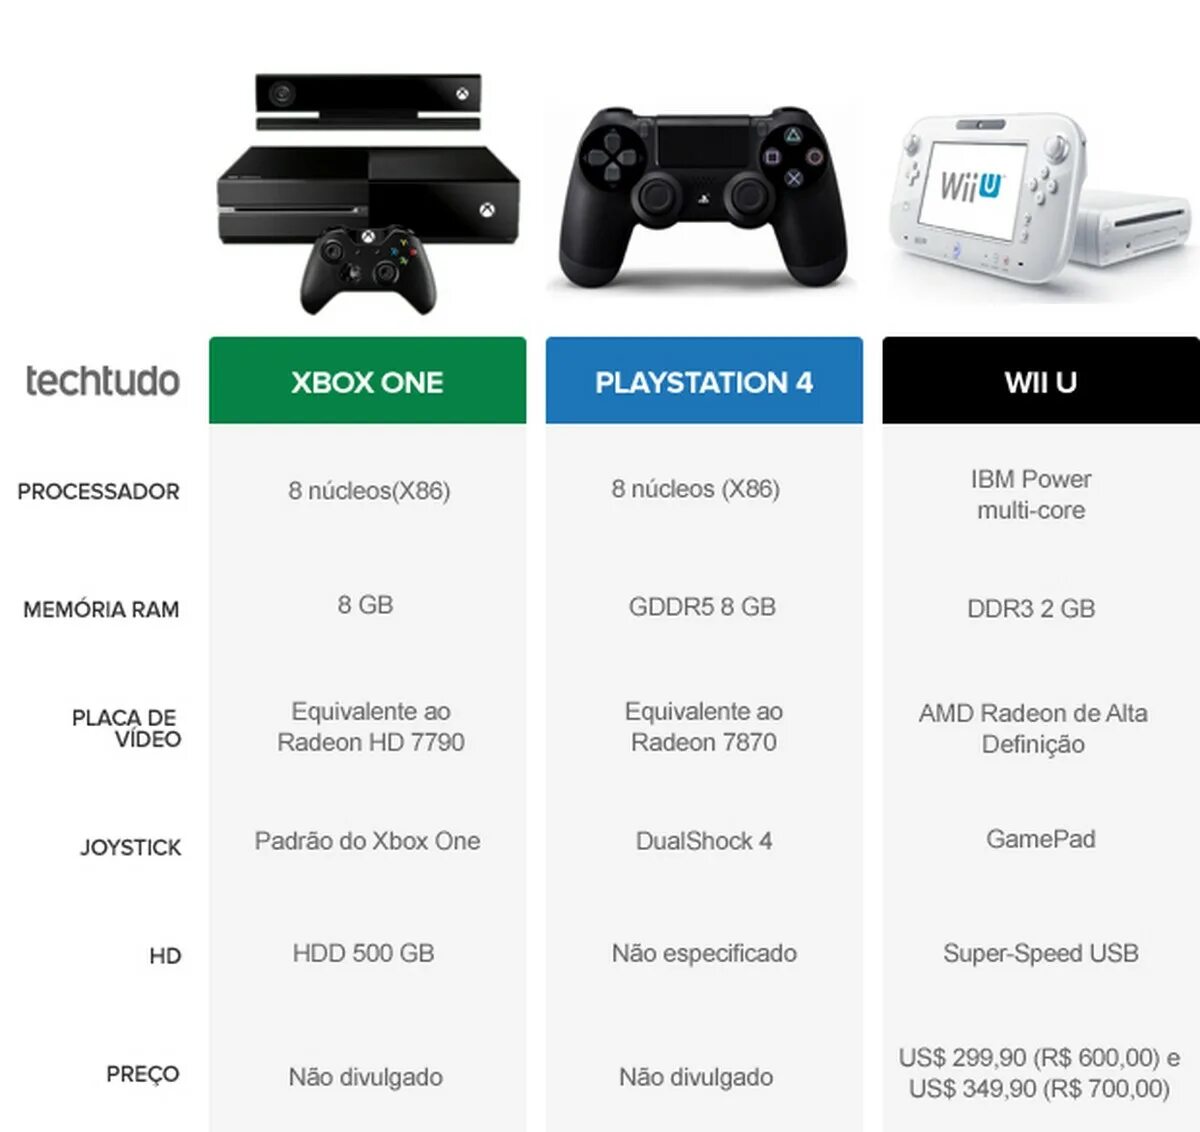 Series s отличие series x. Xbox 360 отличия моделей. Габариты консоли Xbox 360. Xbox one консоль характеристики. Габариты Xbox one и Xbox one s.